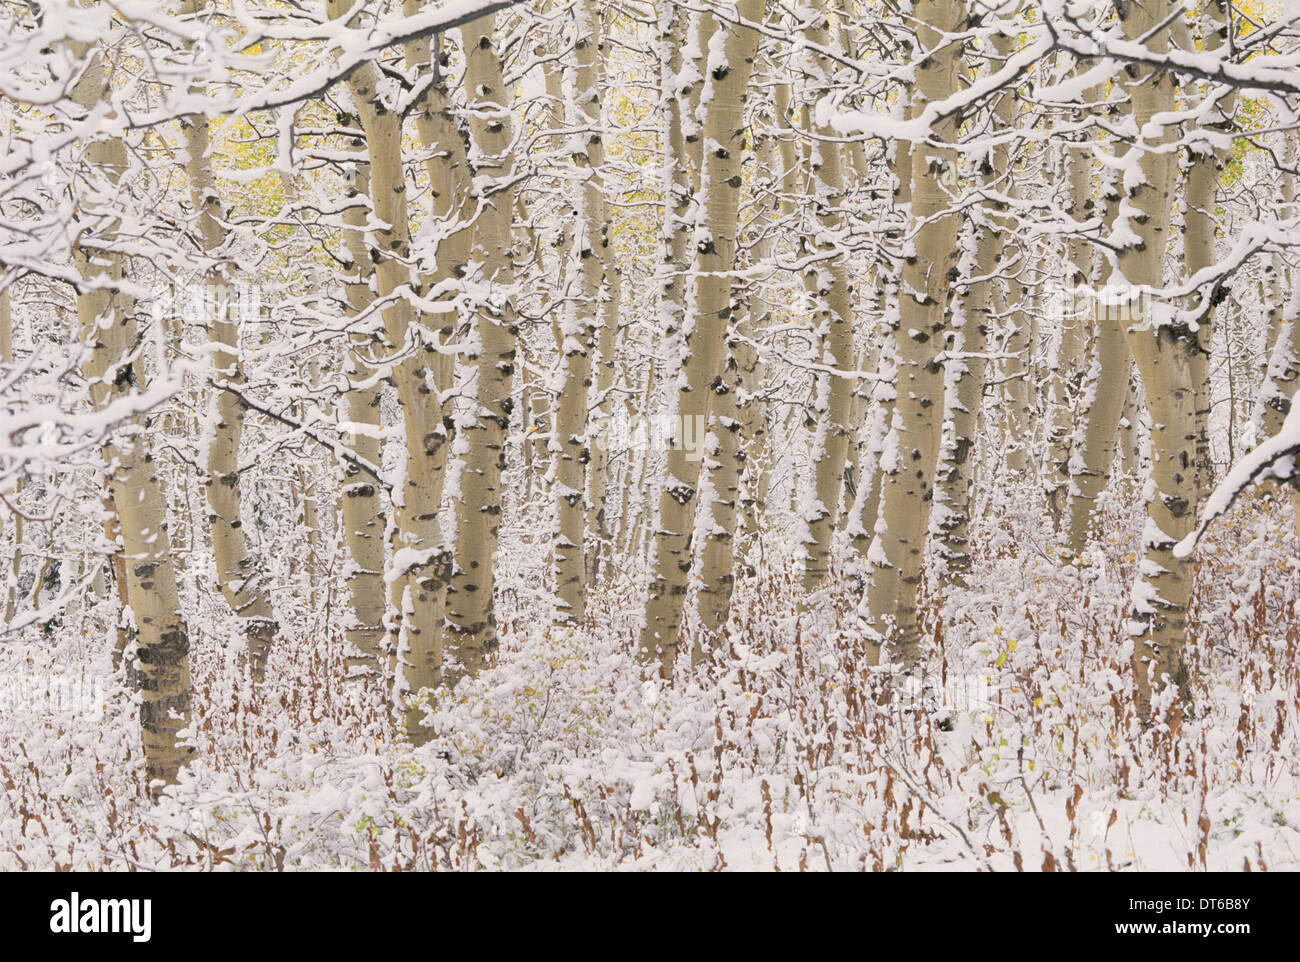 Une forêt de trembles dans les montagnes Wasatch, avec l'écorce blanche. Couverture de neige sur le terrain. Banque D'Images